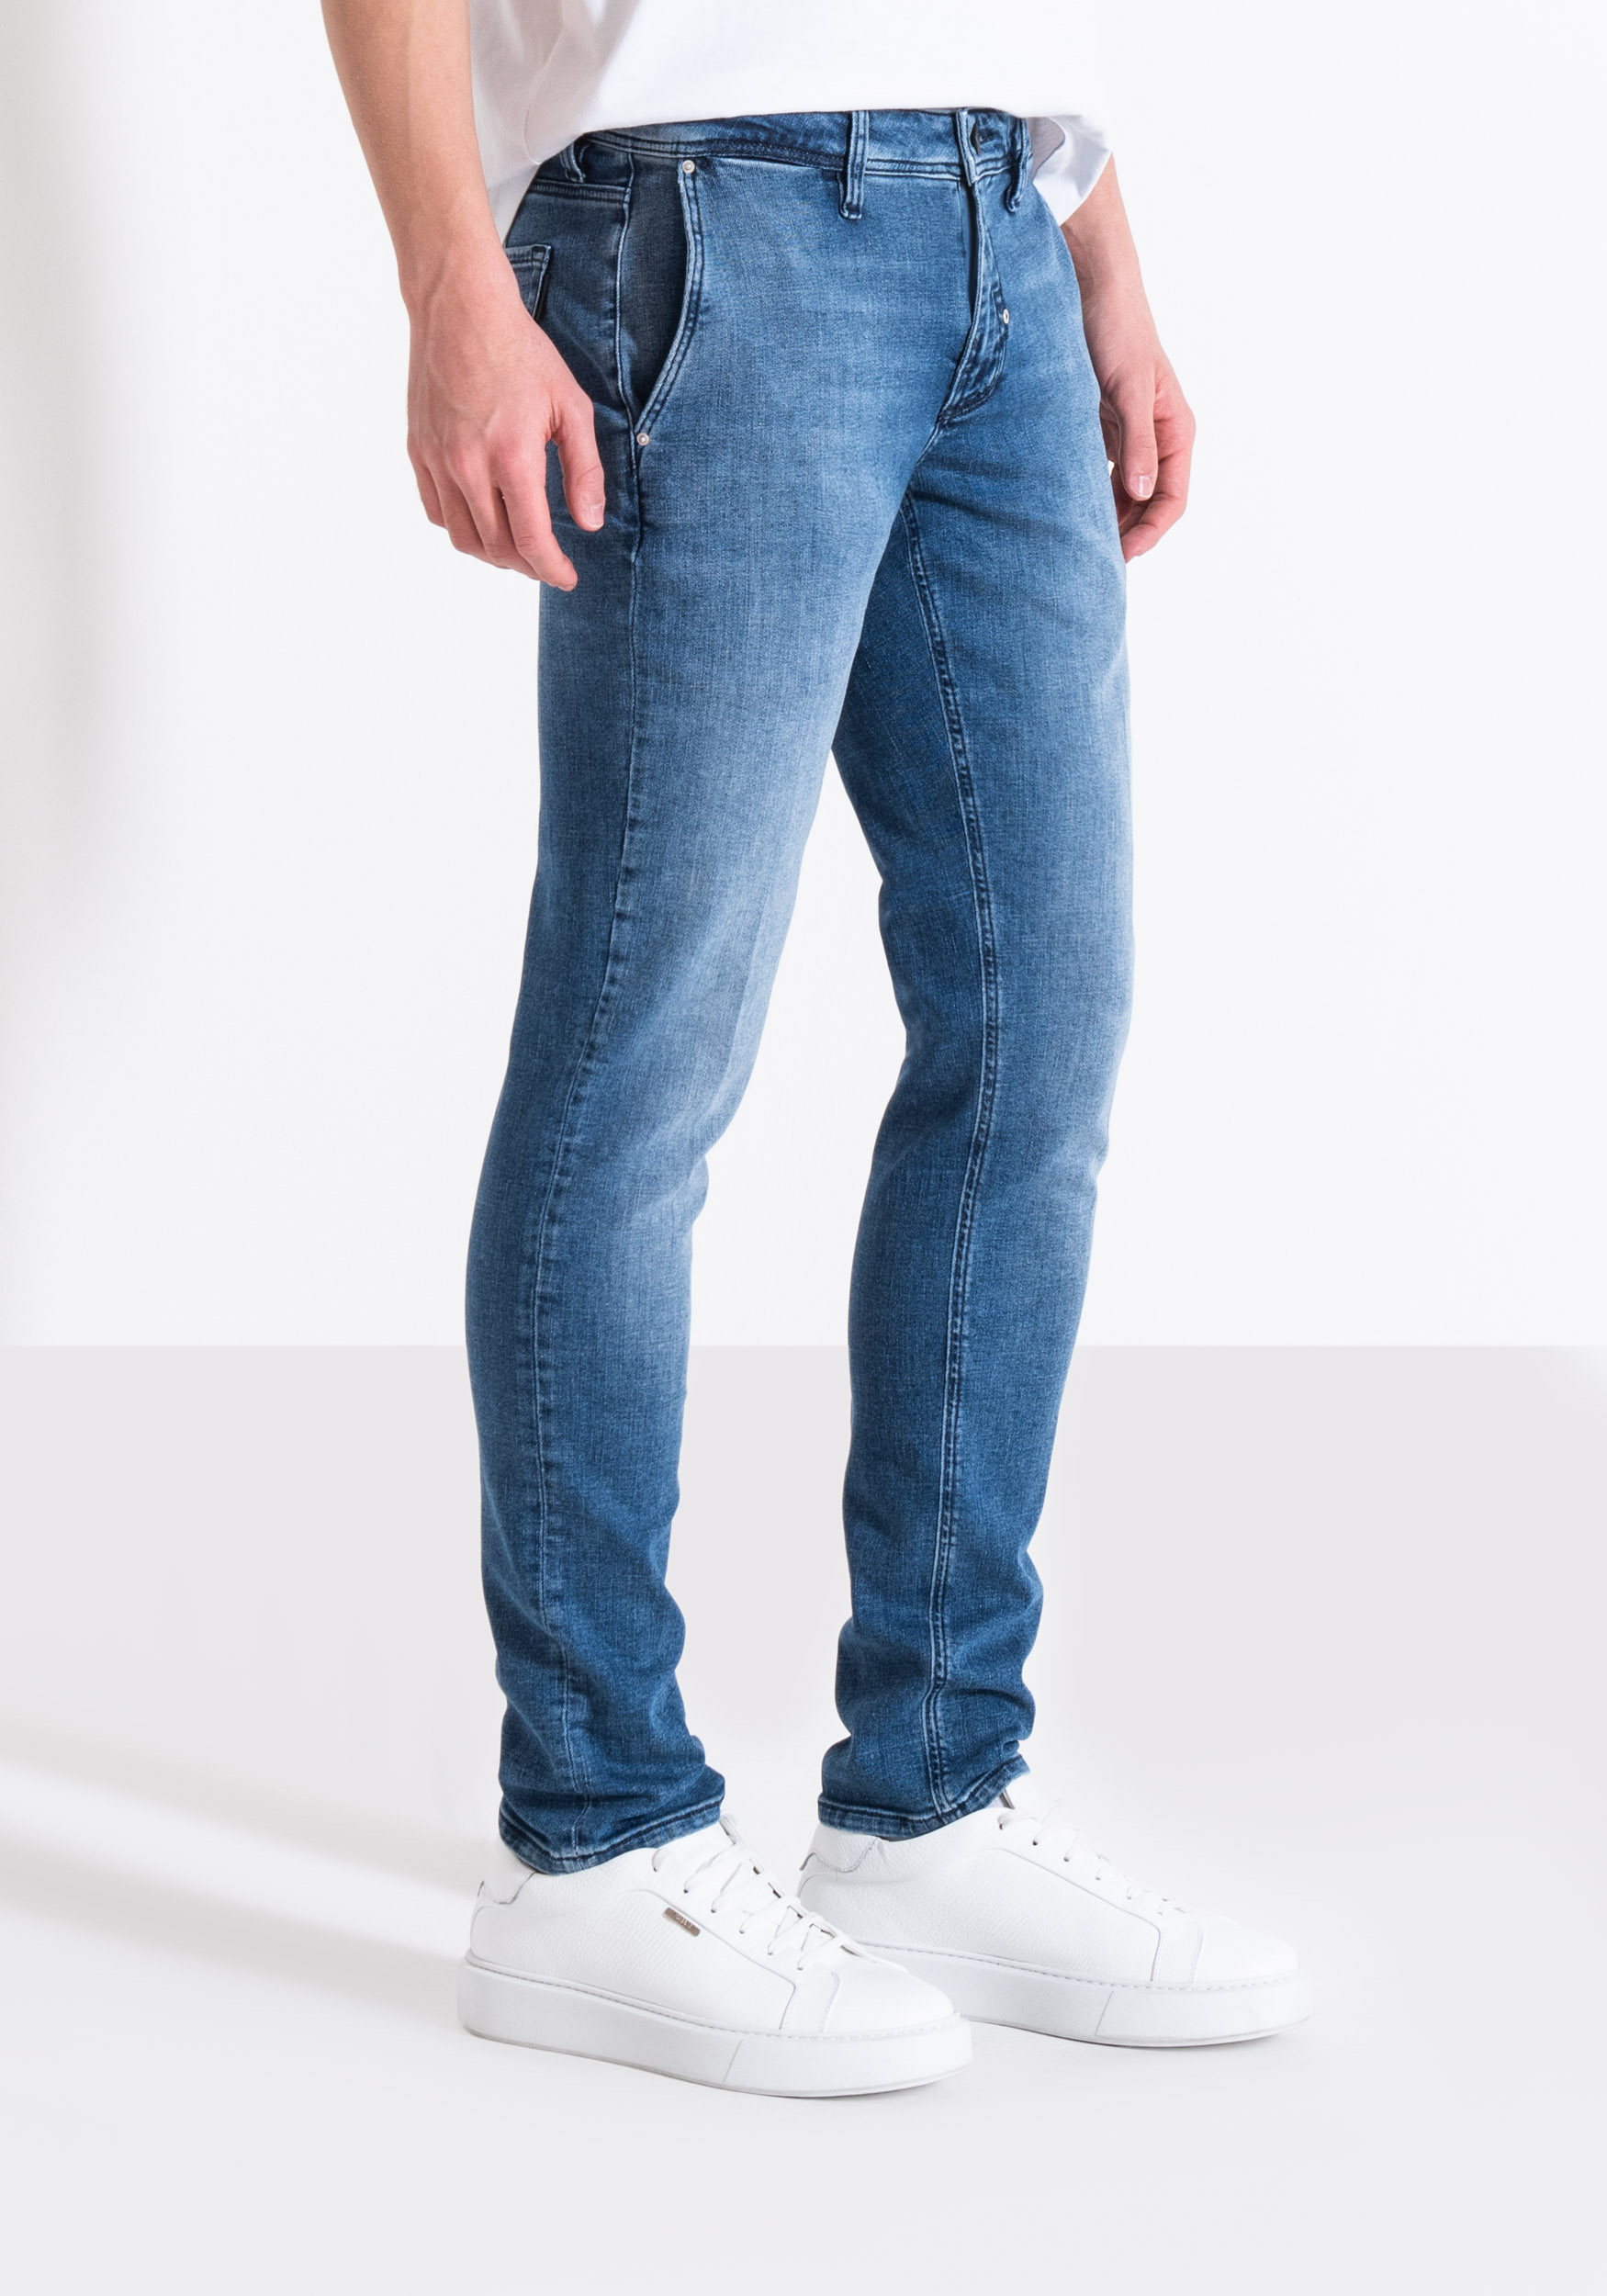 antony morato jeans skinny fit mason in denim stretch uomo